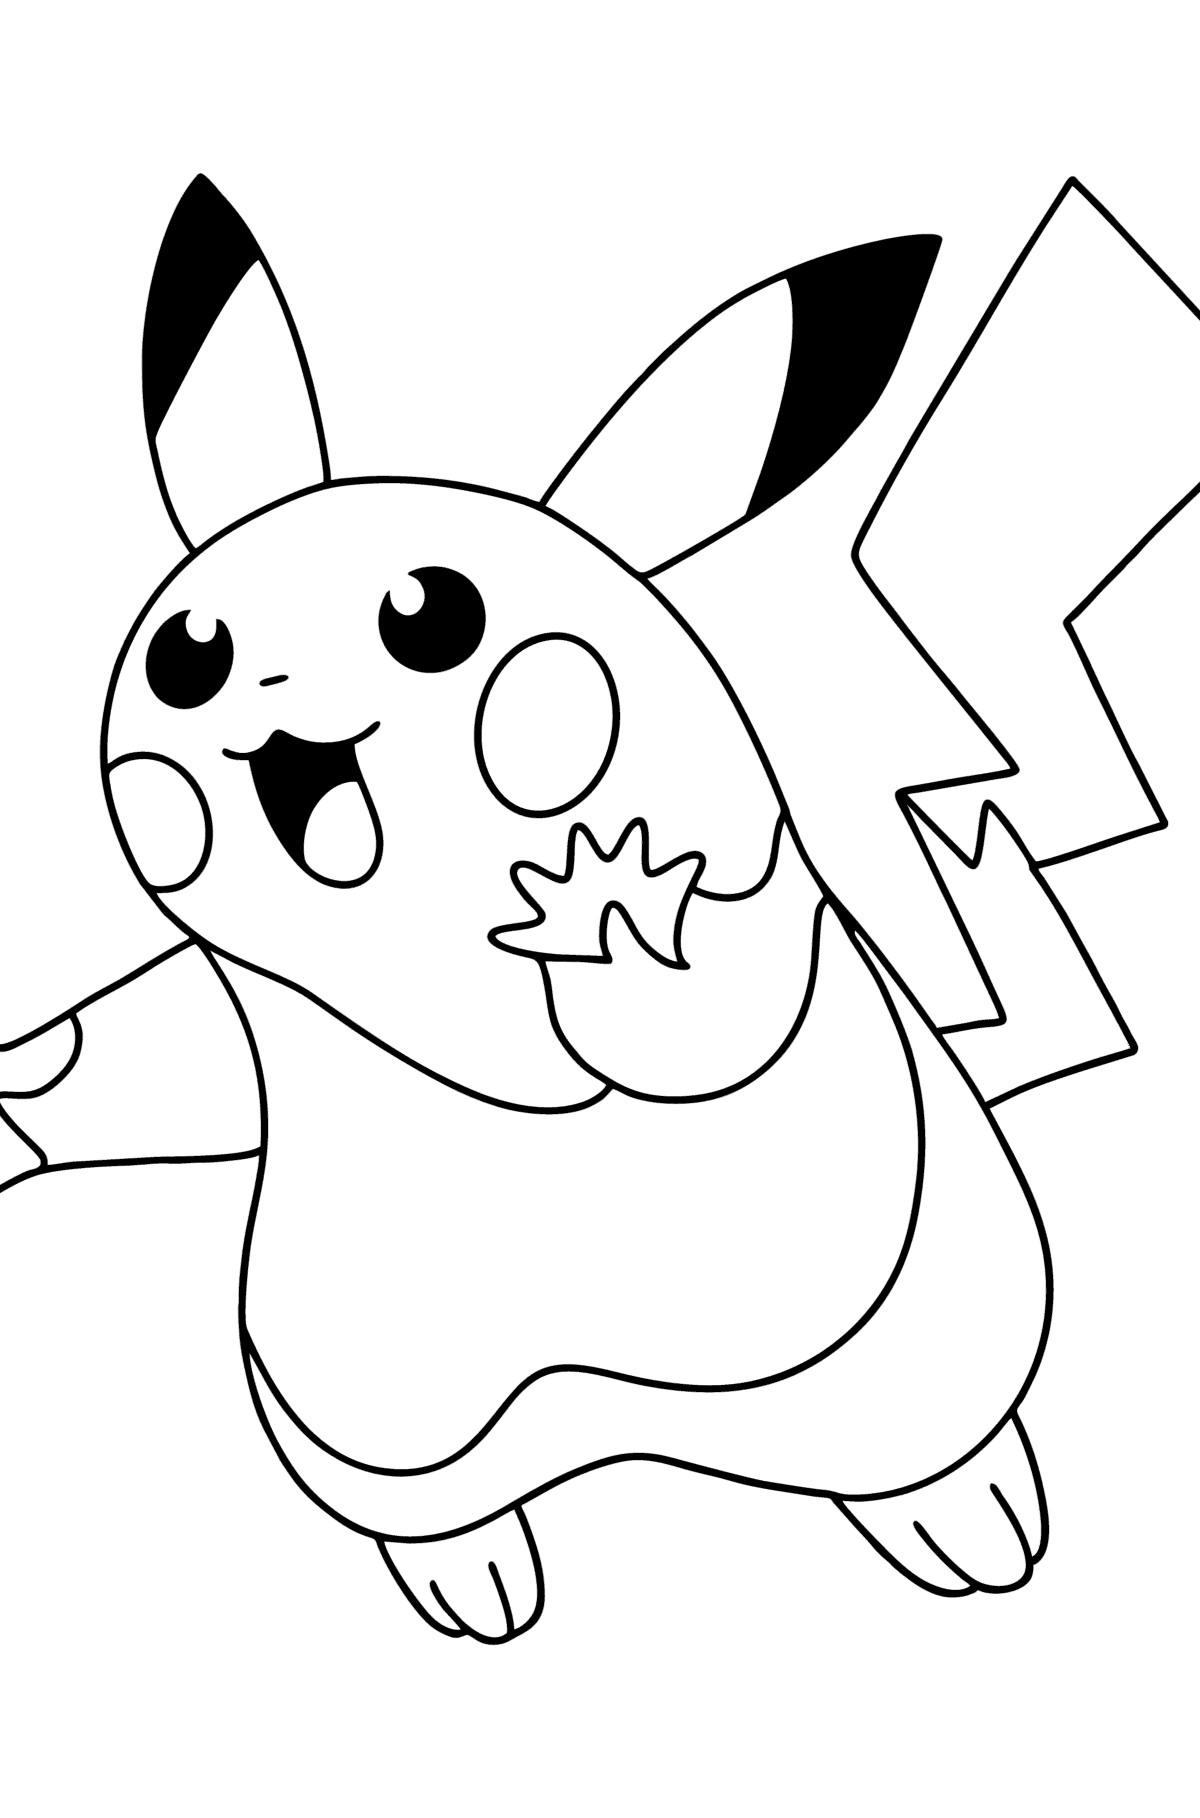 Ausmalbild Pokémon Go Picachu - Malvorlagen für Kinder